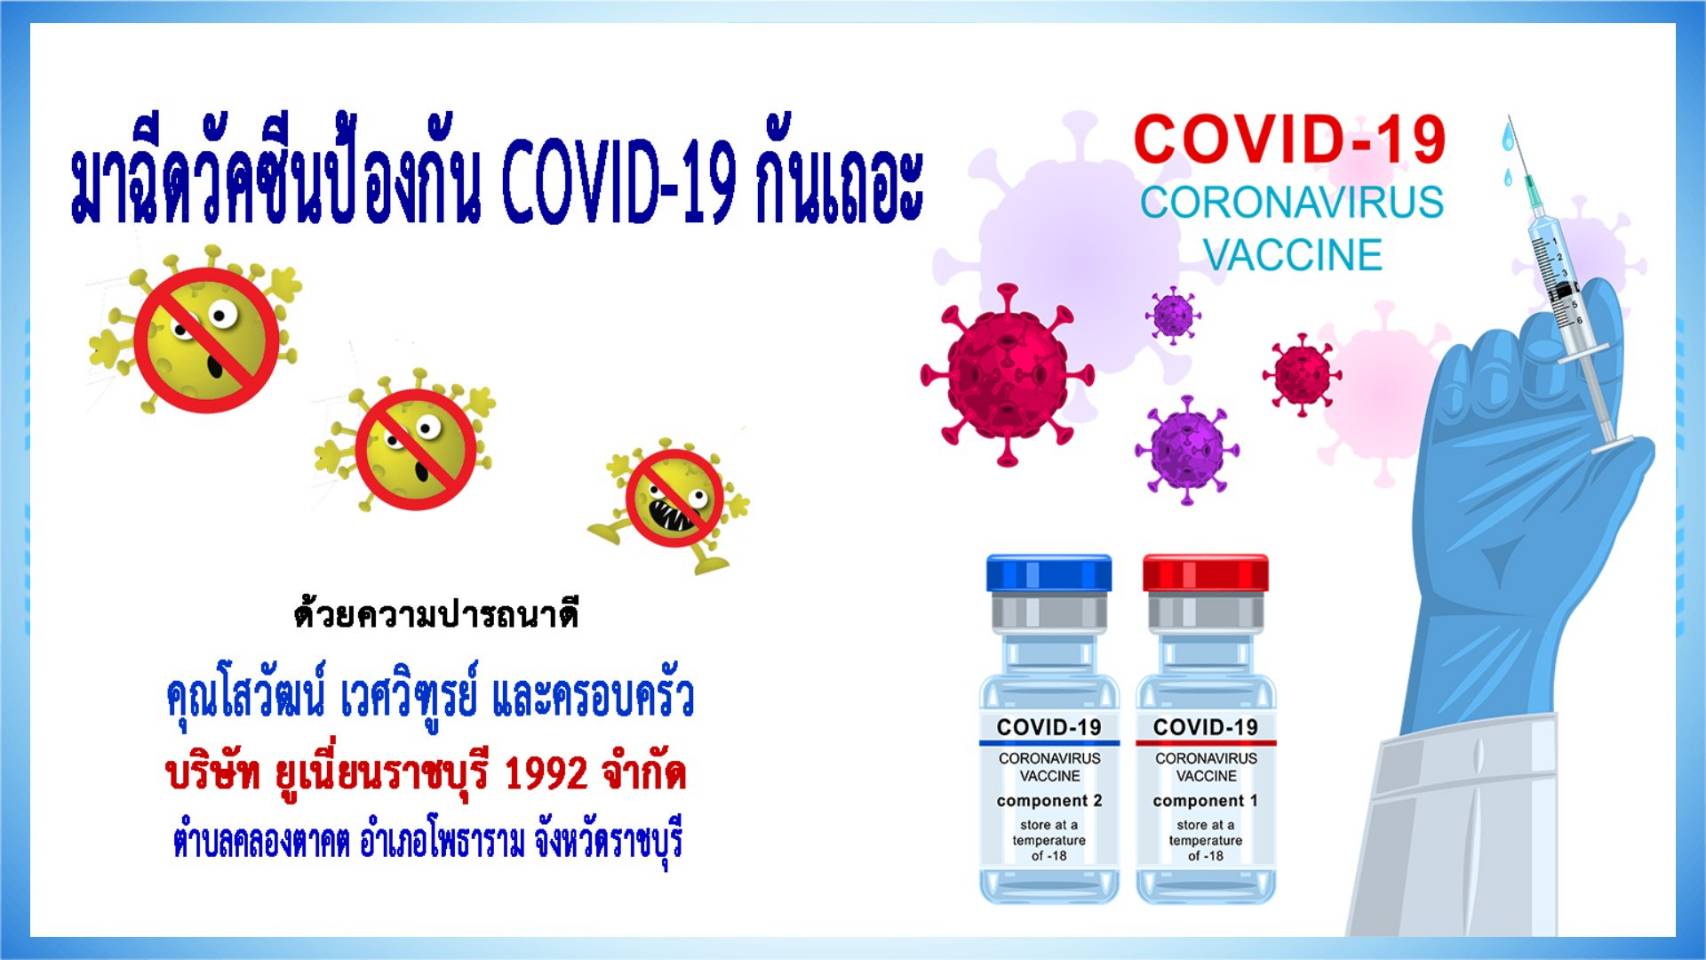 ราชบุรี-บริษัท ยูเนี่ยนราชบุรี 1992 จำกัด เชิญชวนฉีดวัคซีนป้องกันโควิด-19